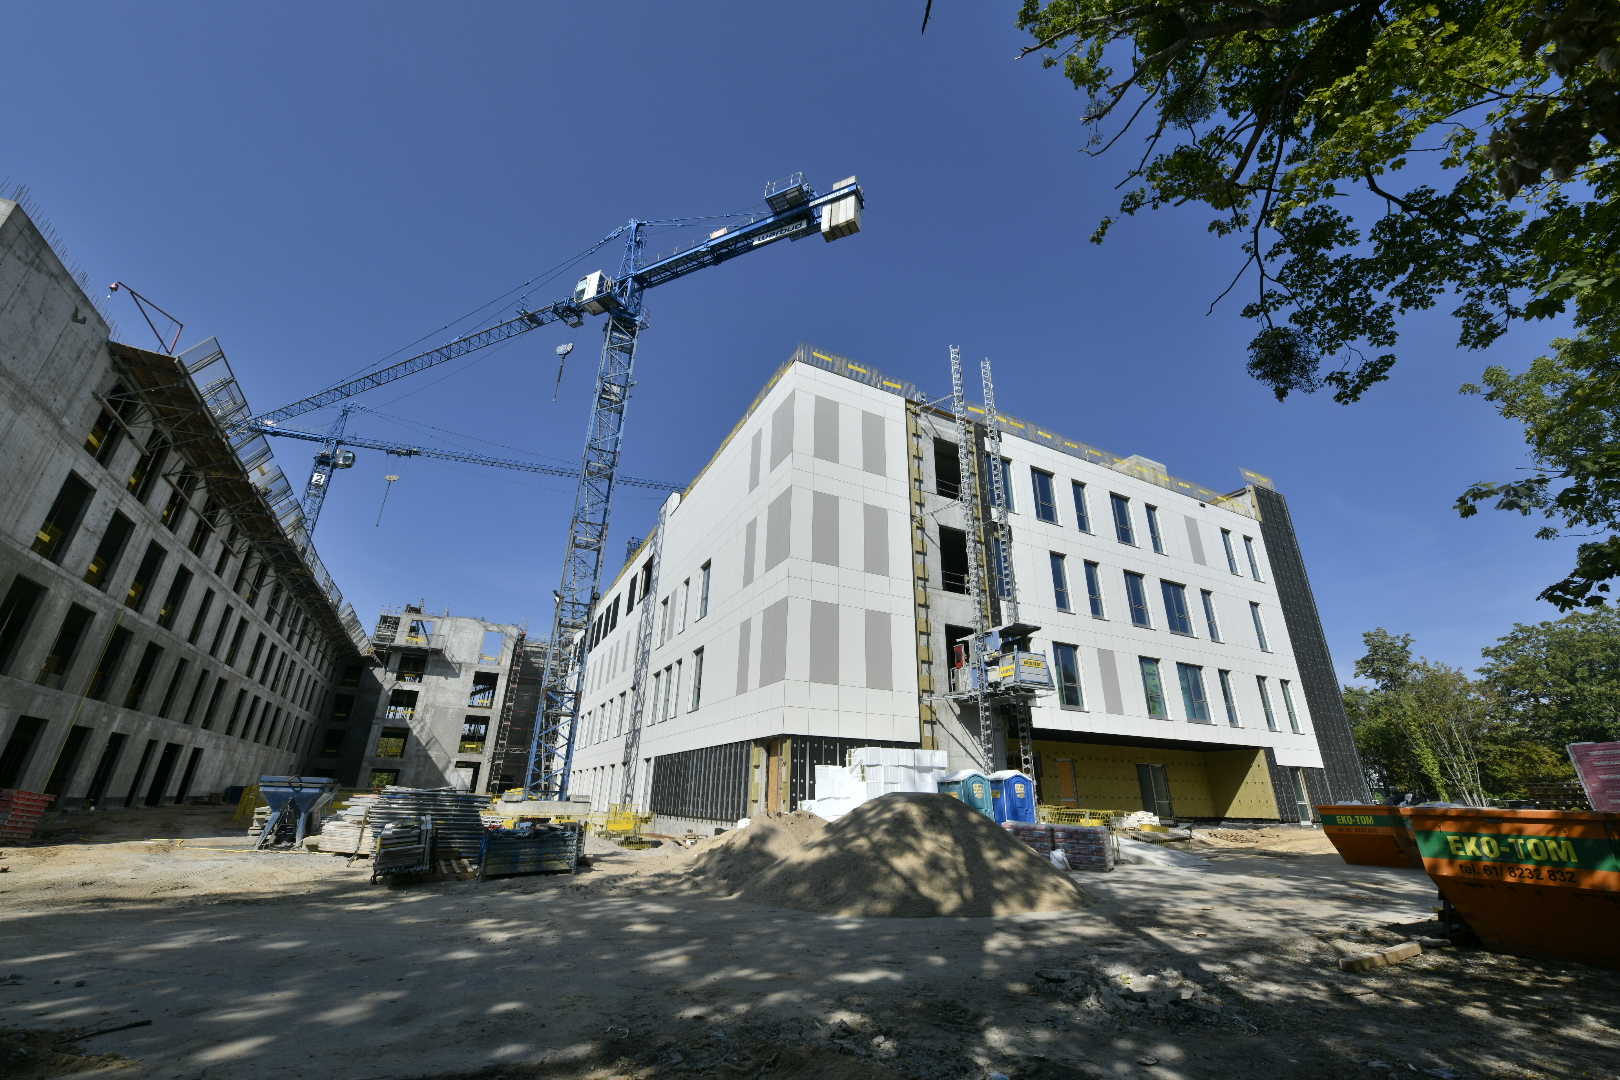  budowa centralnego szpitala uniwersyteckiego Poznaniu - Wojtek Wardejn - Radio Poznań